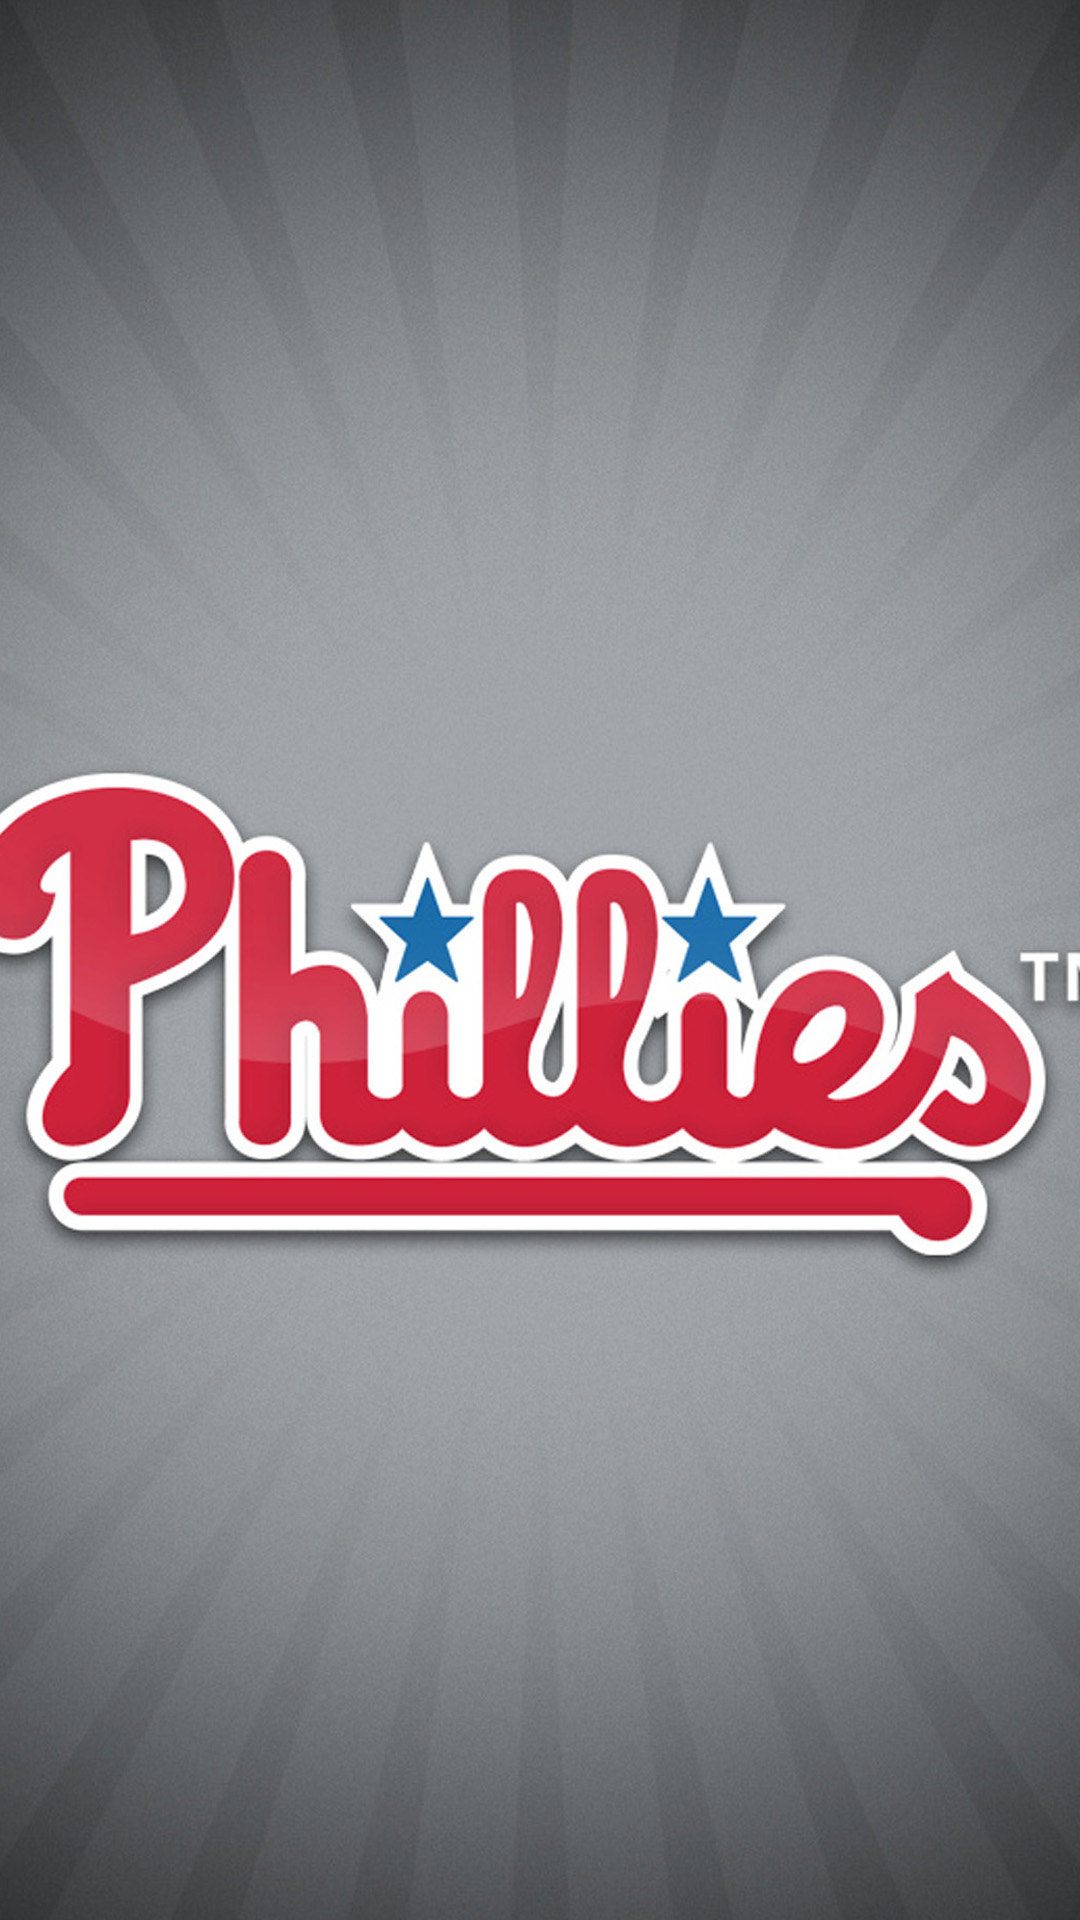 phillies logo wallpaper #18